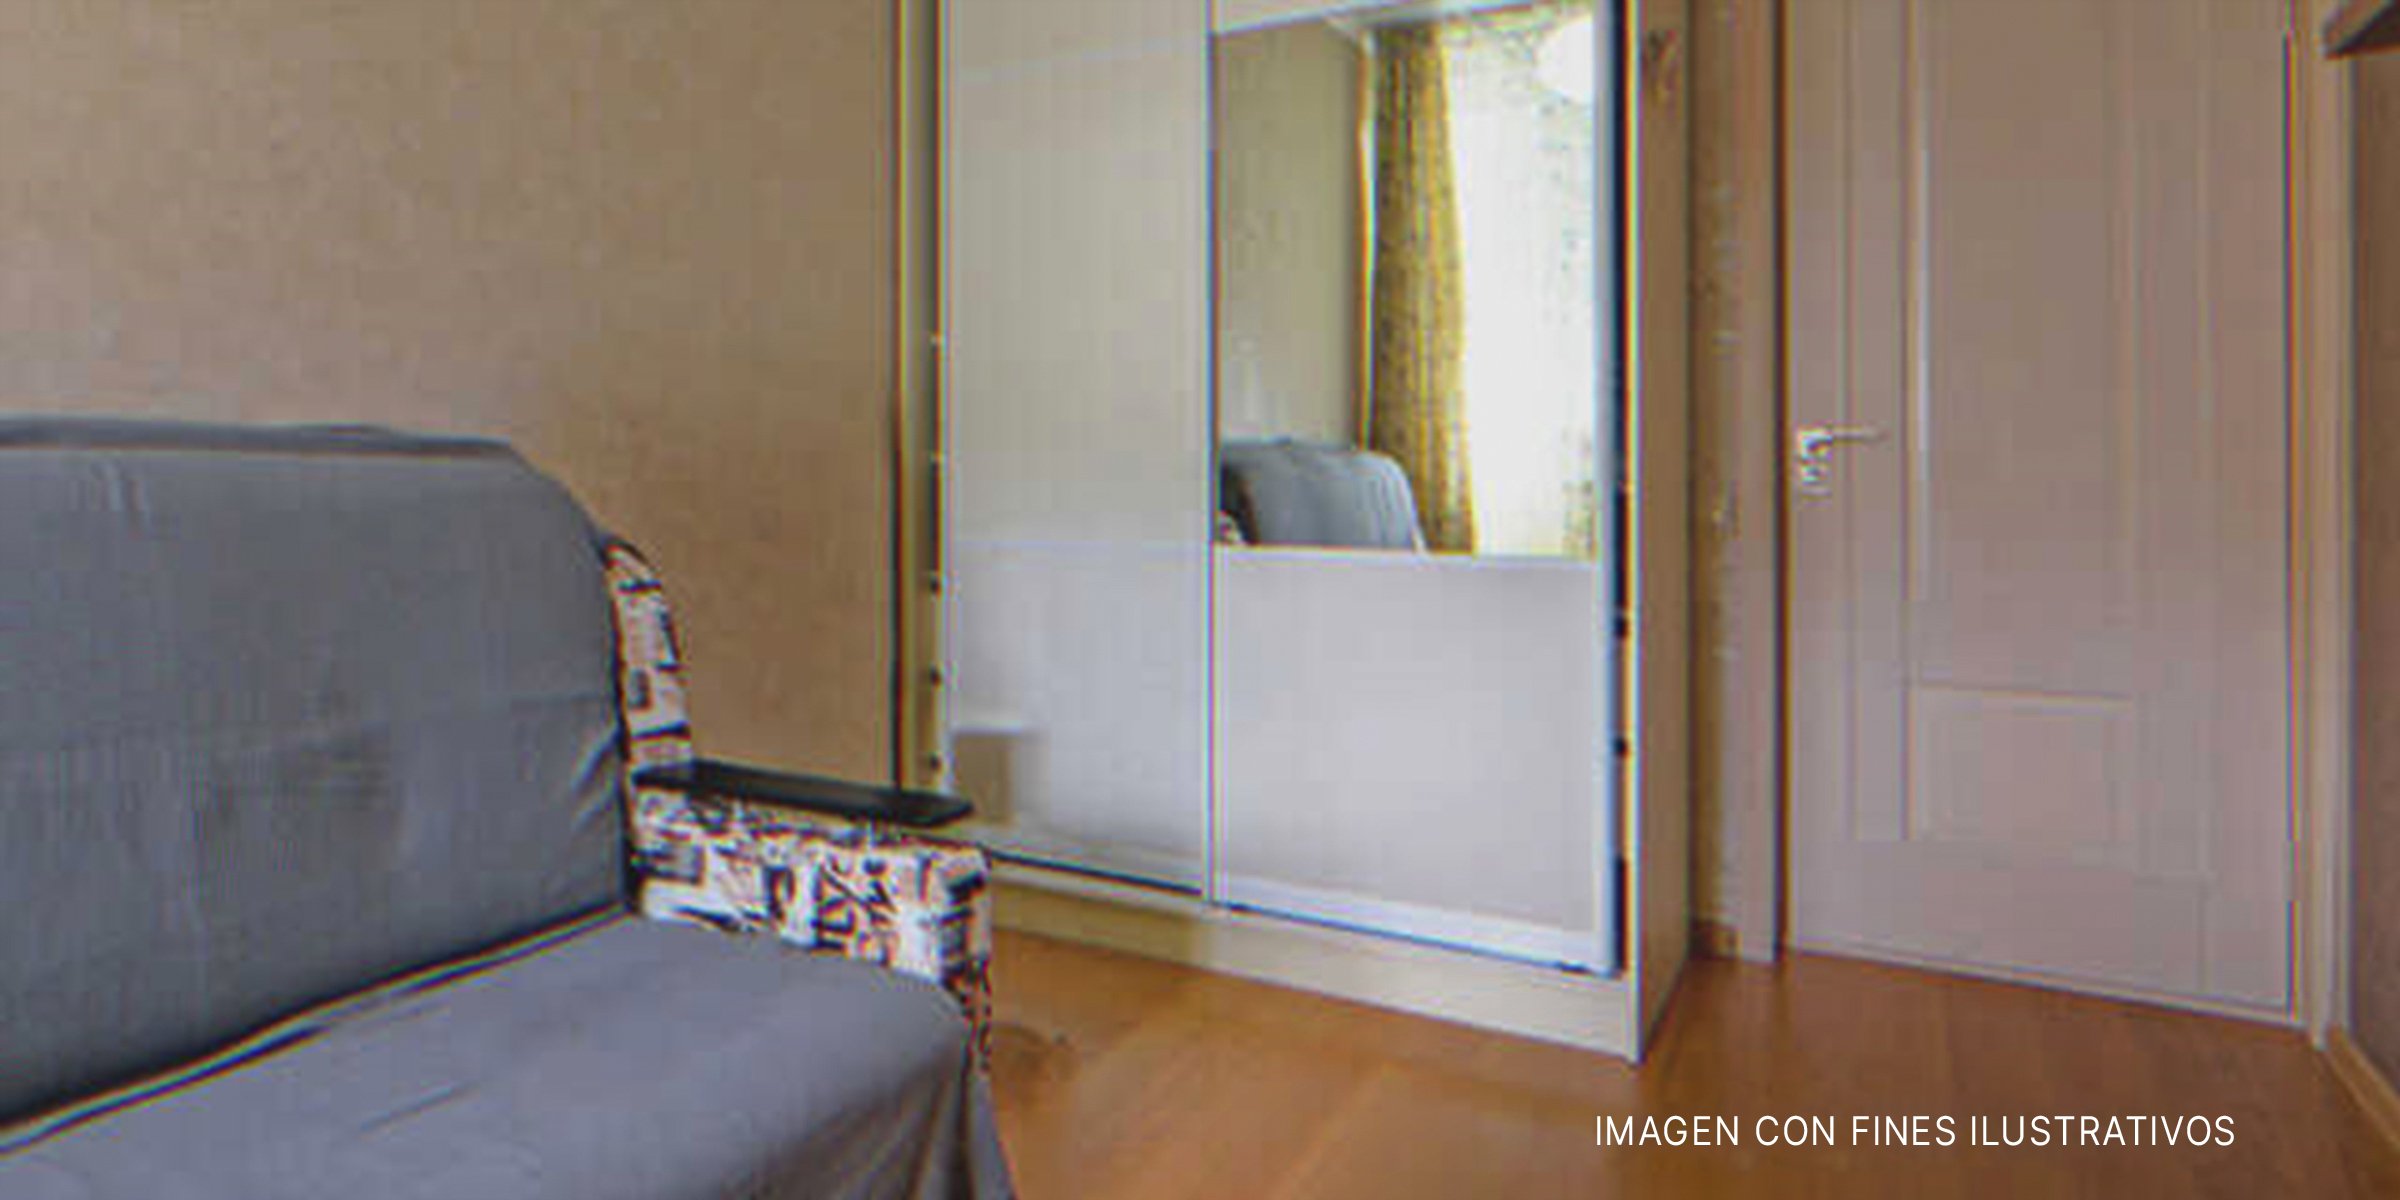 Una habitación con armario. | Foto: Shutterstock